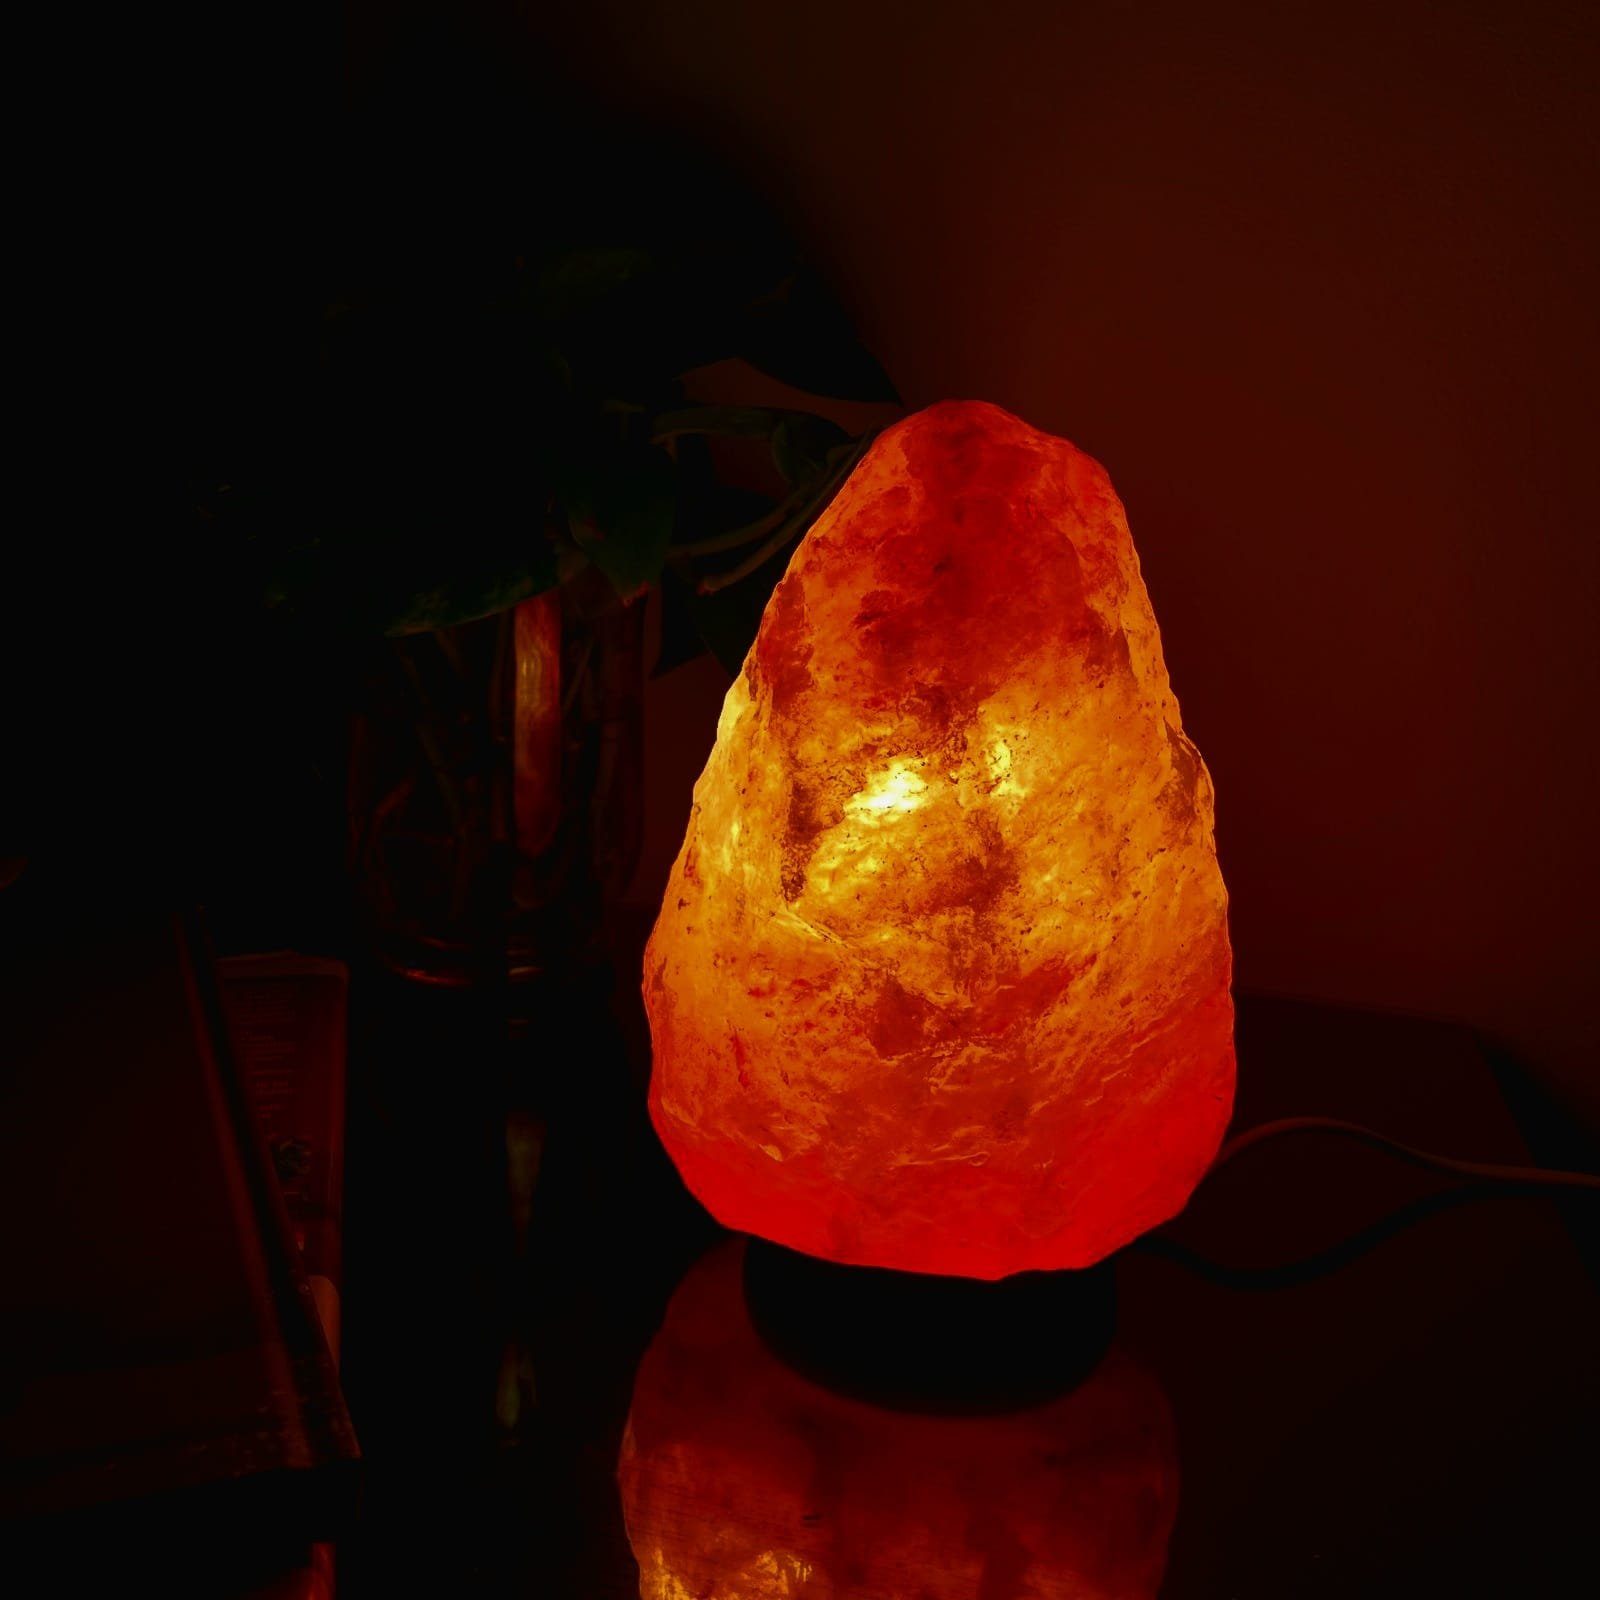 Tischlampe SalzsteinLampe Salzlampe Salzkristall-Tischlampe Himalaya Lampe Salzkristall Heimtex